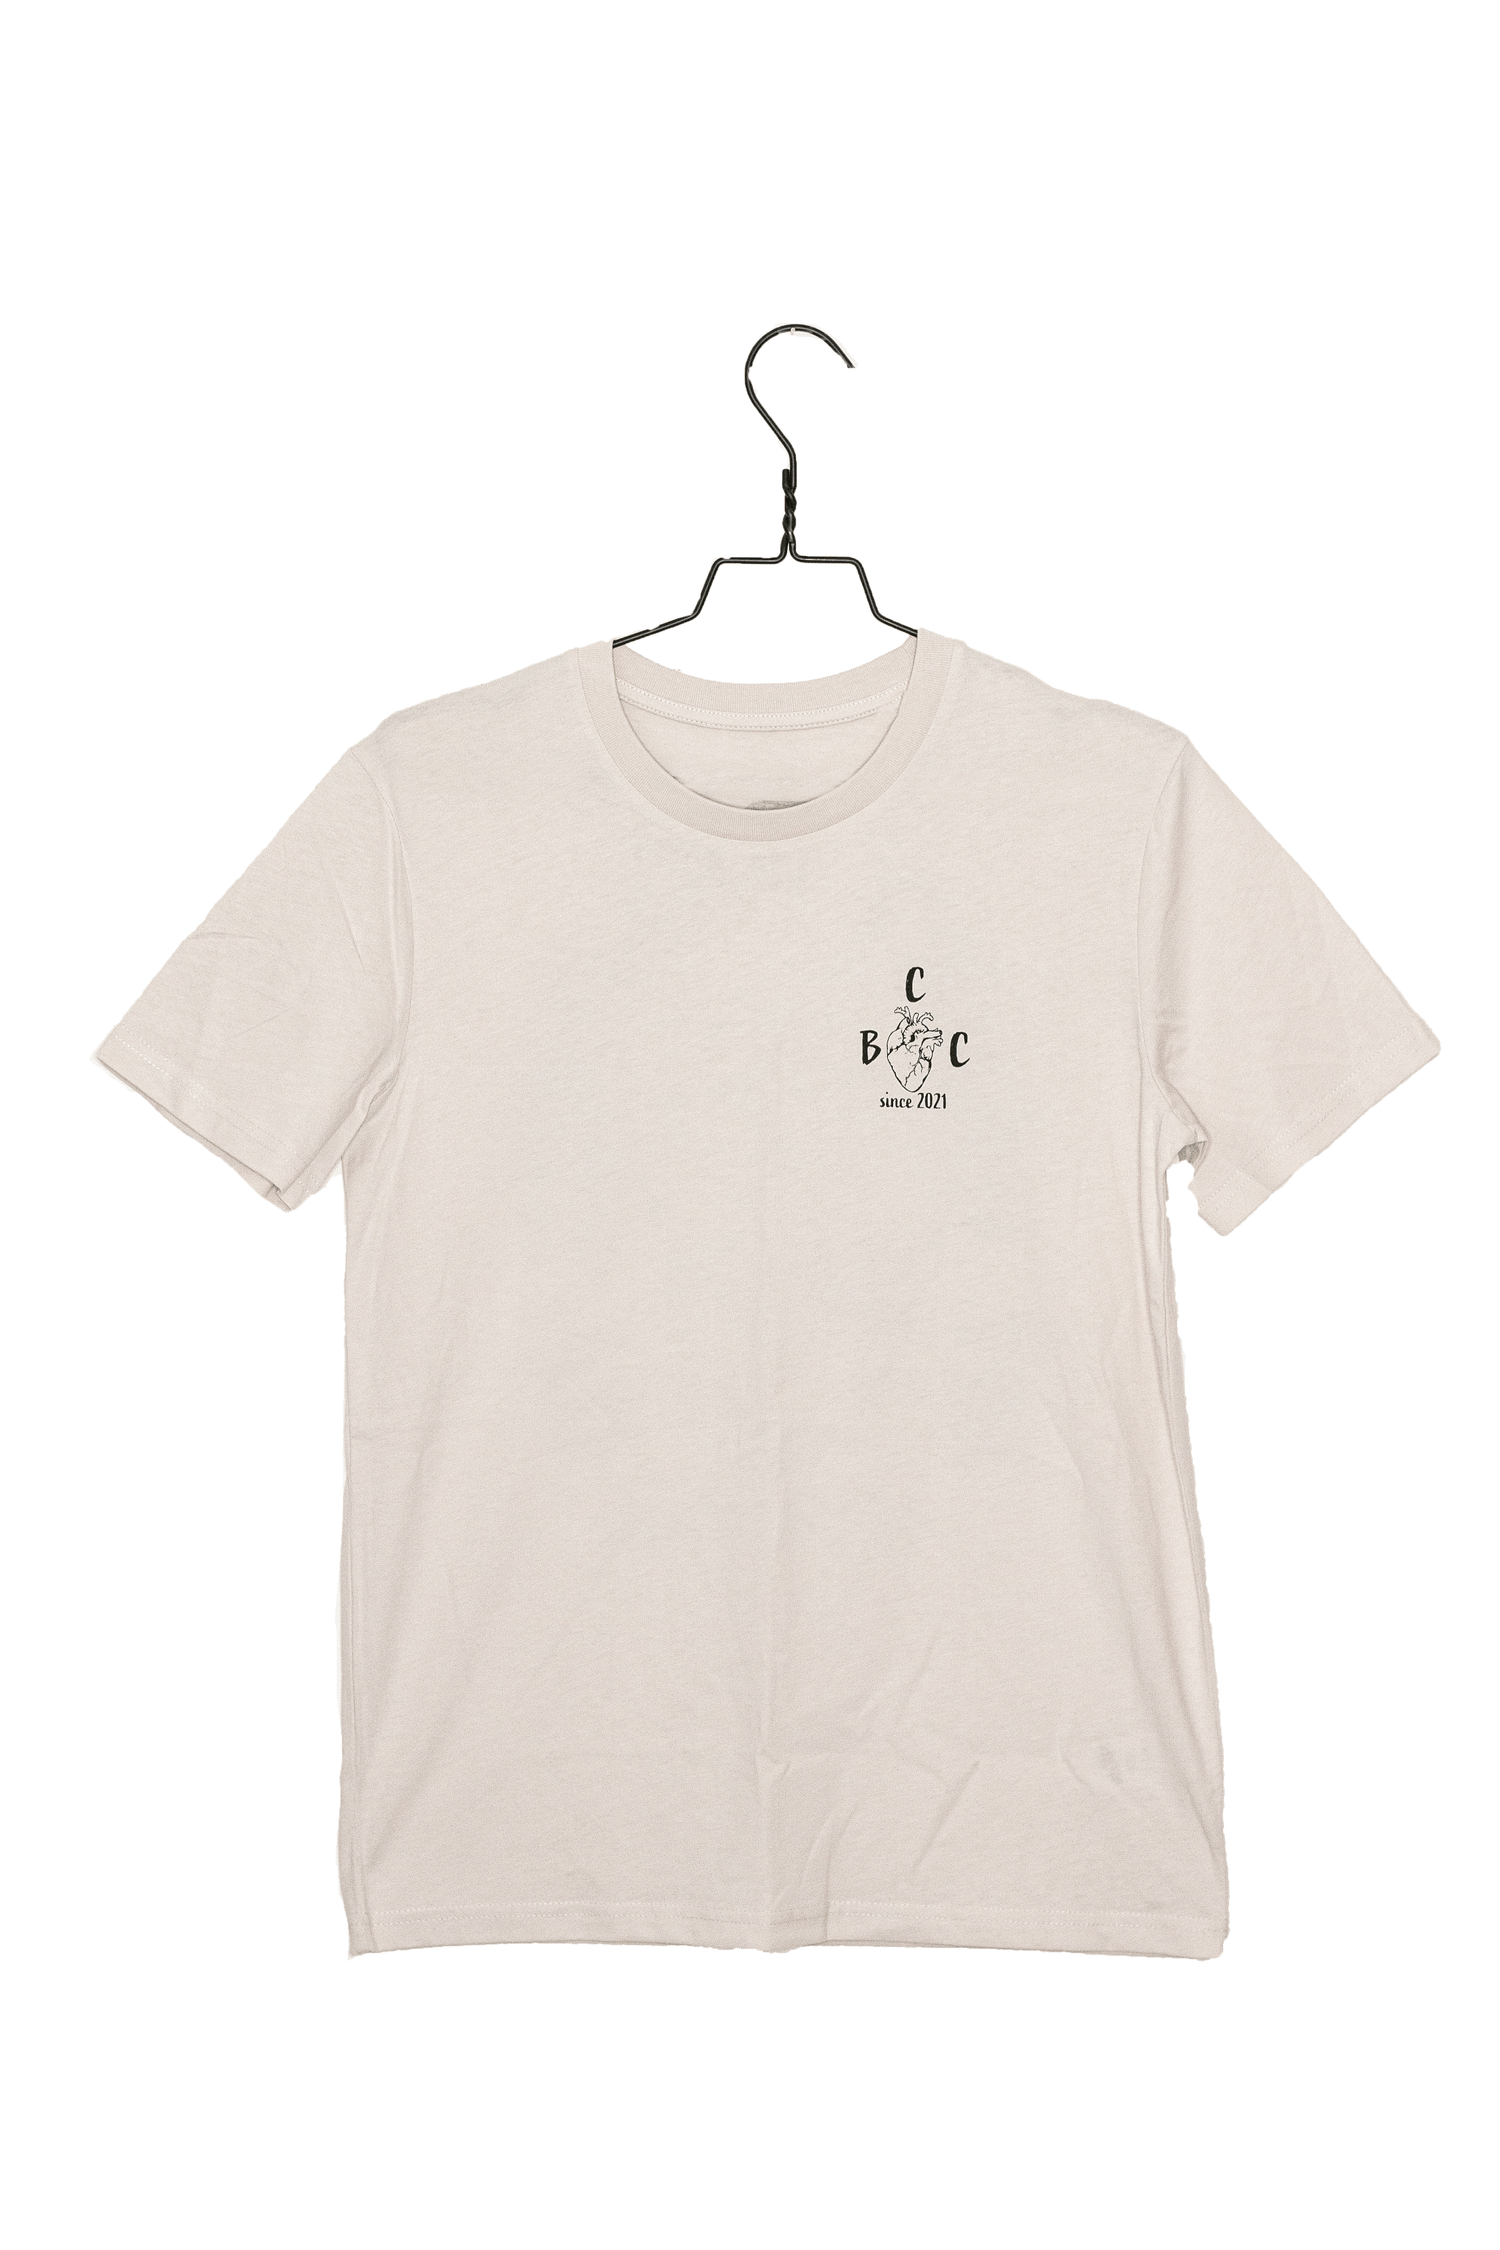 Organic 'My Heart belongs' Summer T-shirt / front print